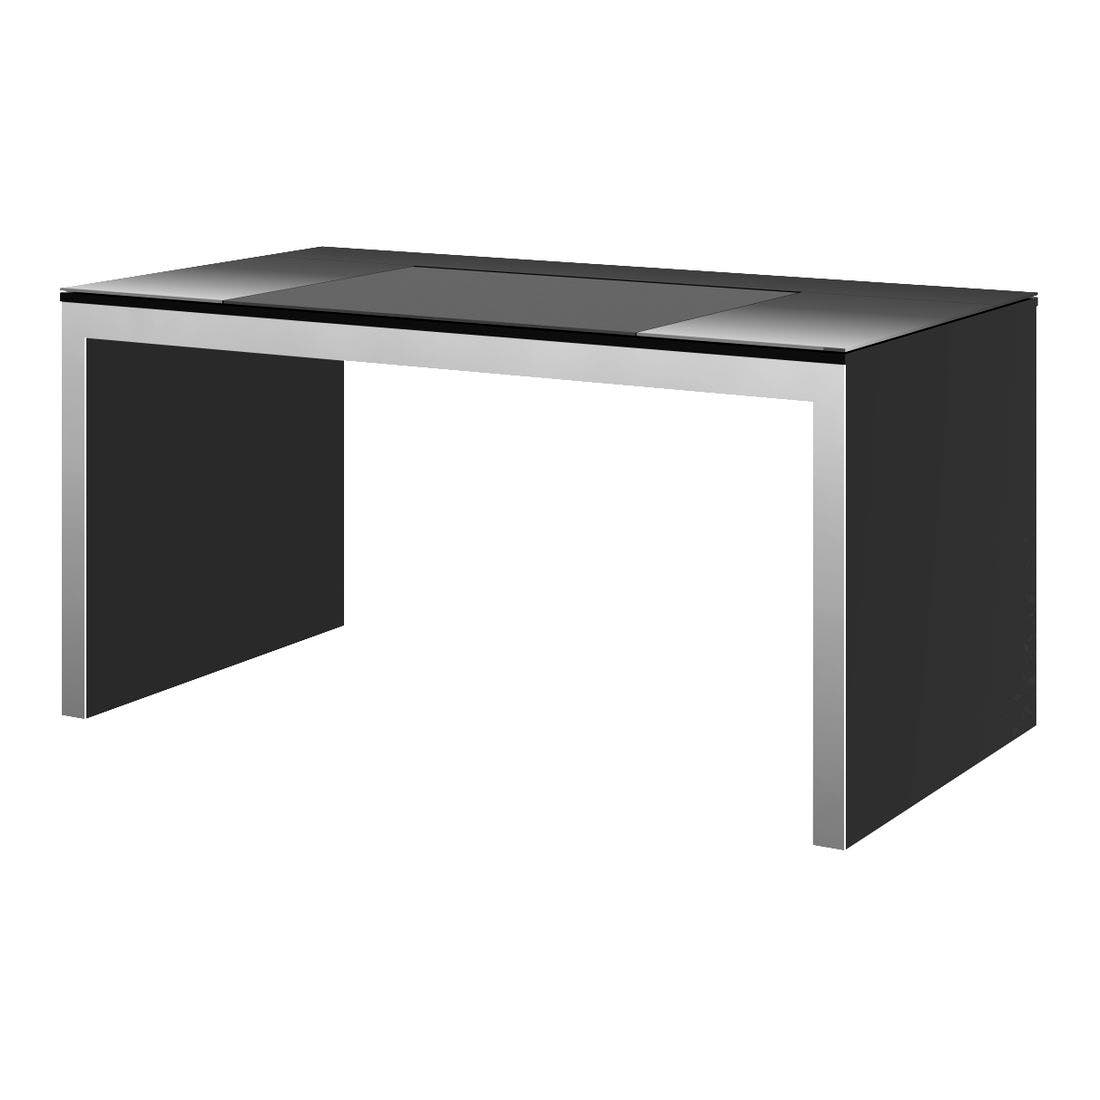 เฟอร์นิเจอร์สำนักงาน โต๊ะทำงาน รุ่น Grande สีสีดำ-SB Design Square